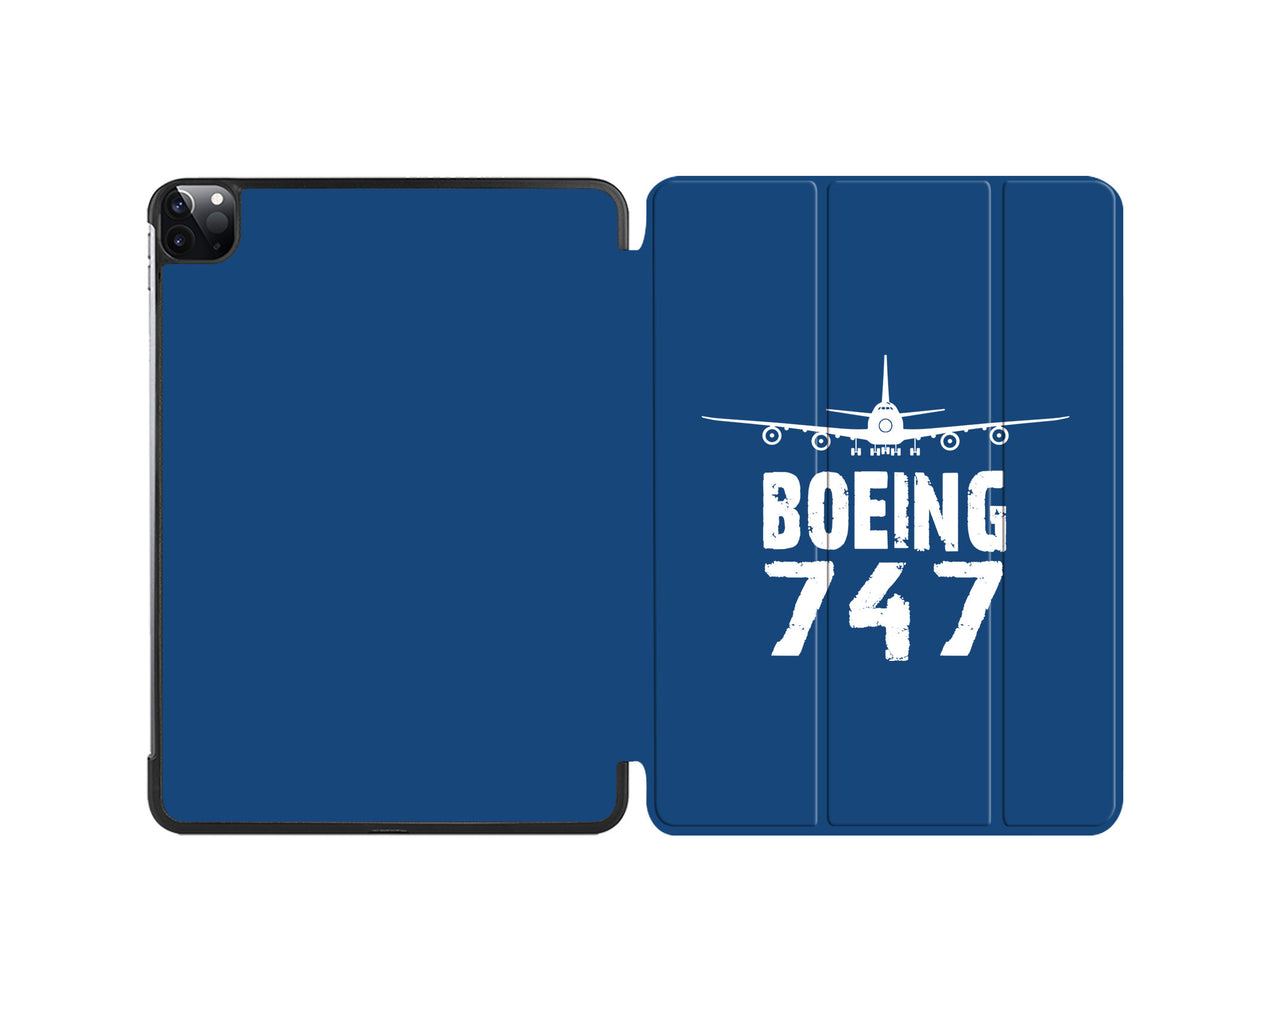 Boeing 747 & Plane Designed iPad Cases